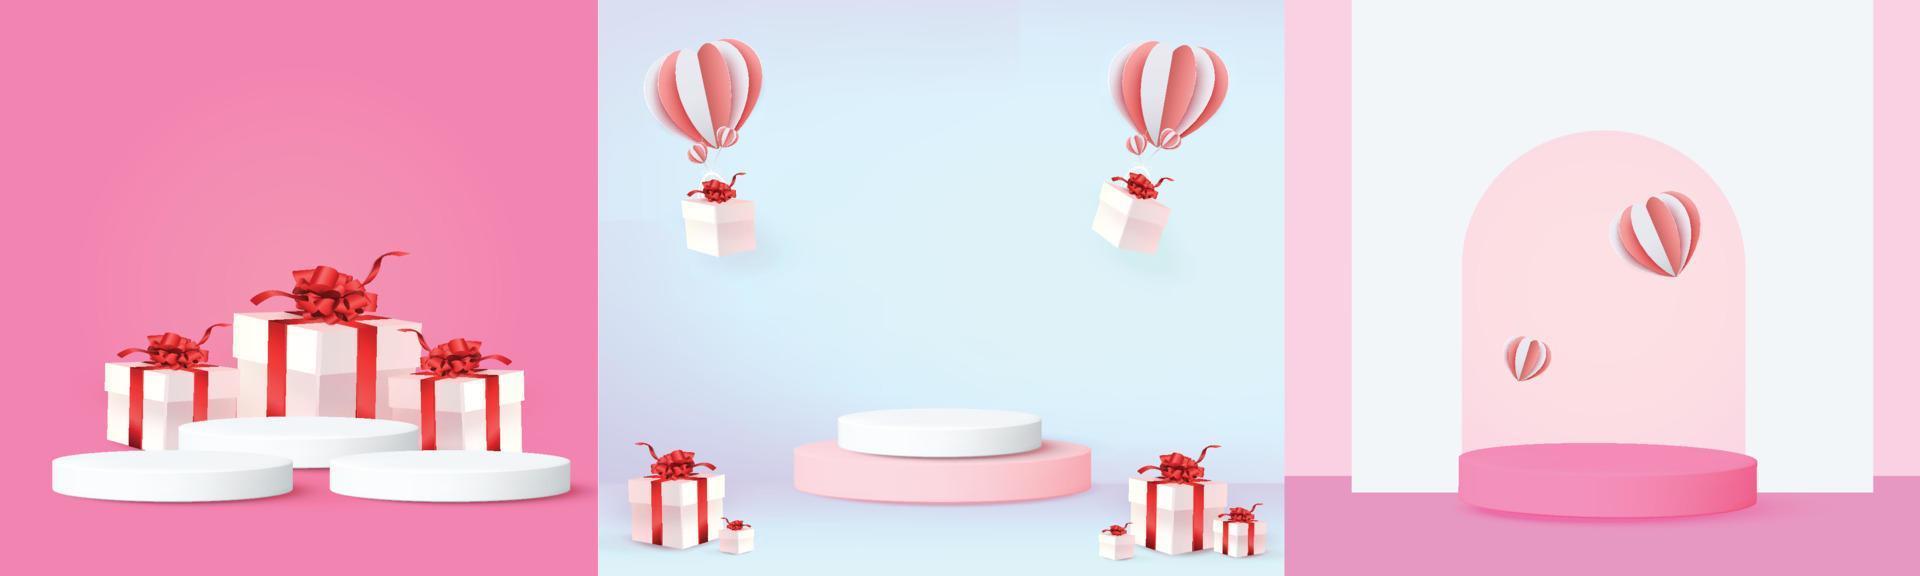 3d podium röd produktbakgrund för valentine. Rosa och hjärta kärlek romantik koncept design vektor illustation dekoration banner